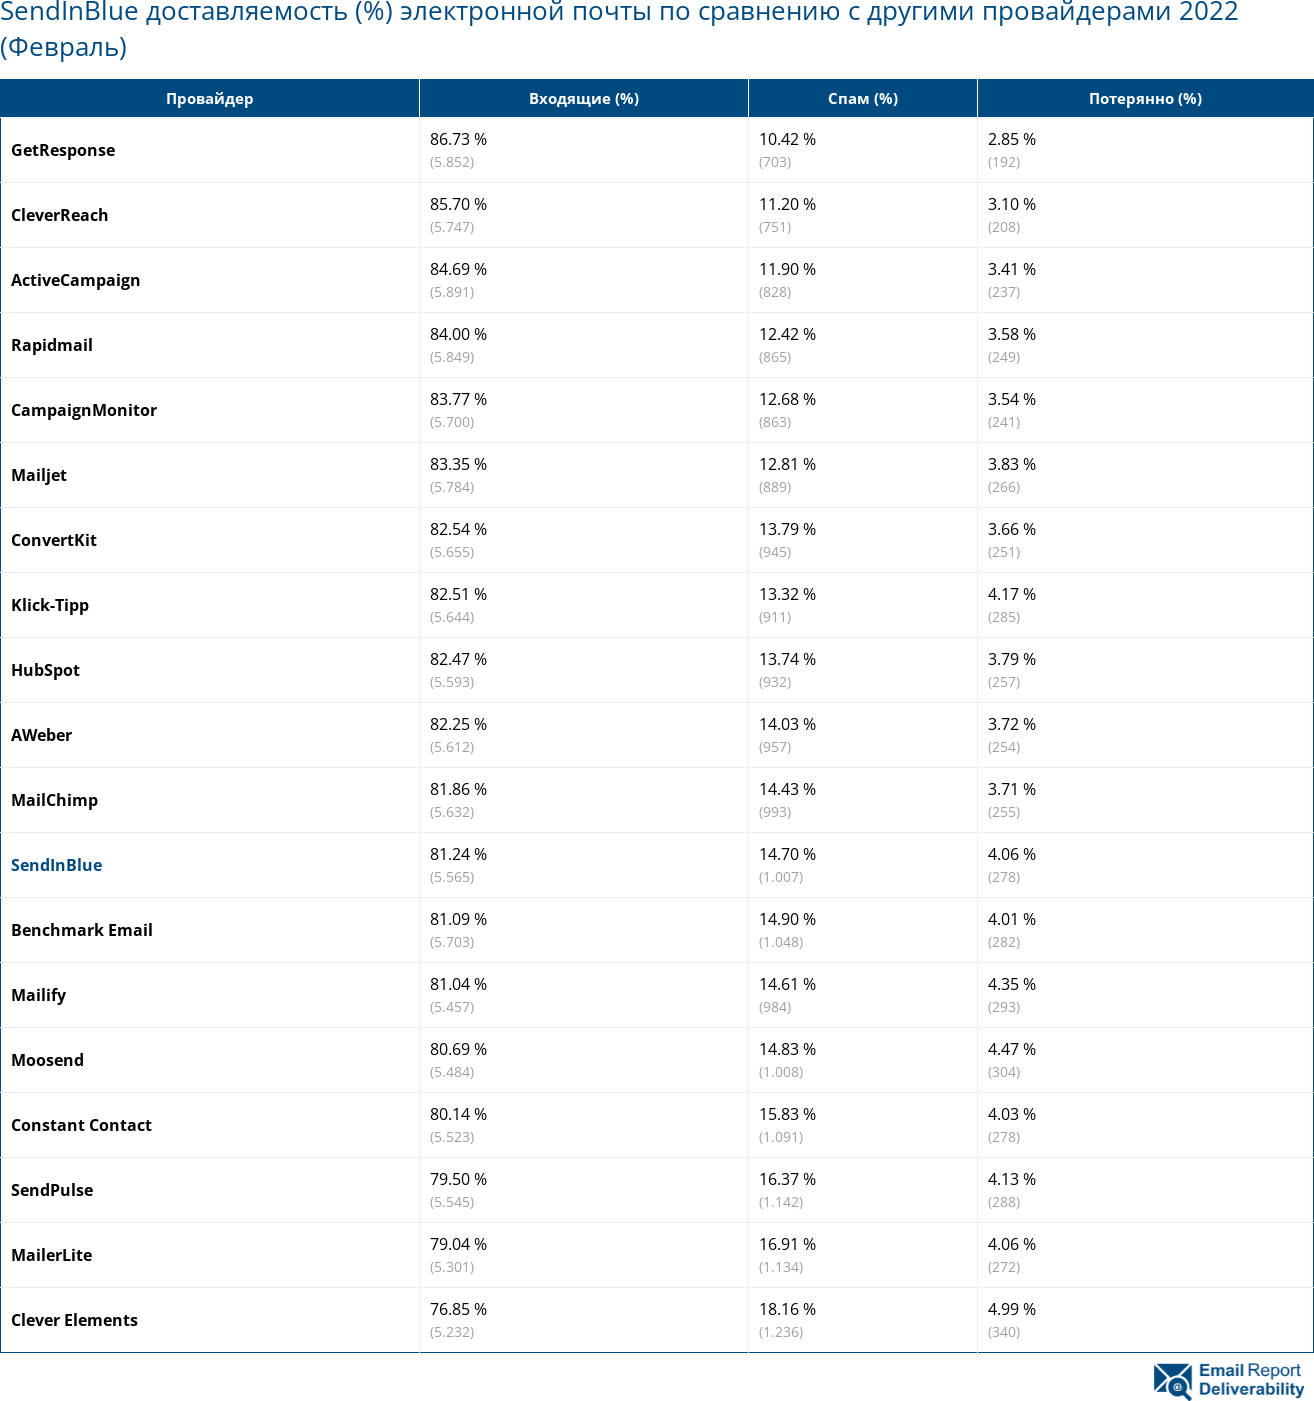 SendInBlue доставляемость (%) электронной почты по сравнению с другими провайдерами 2022 (Февраль)